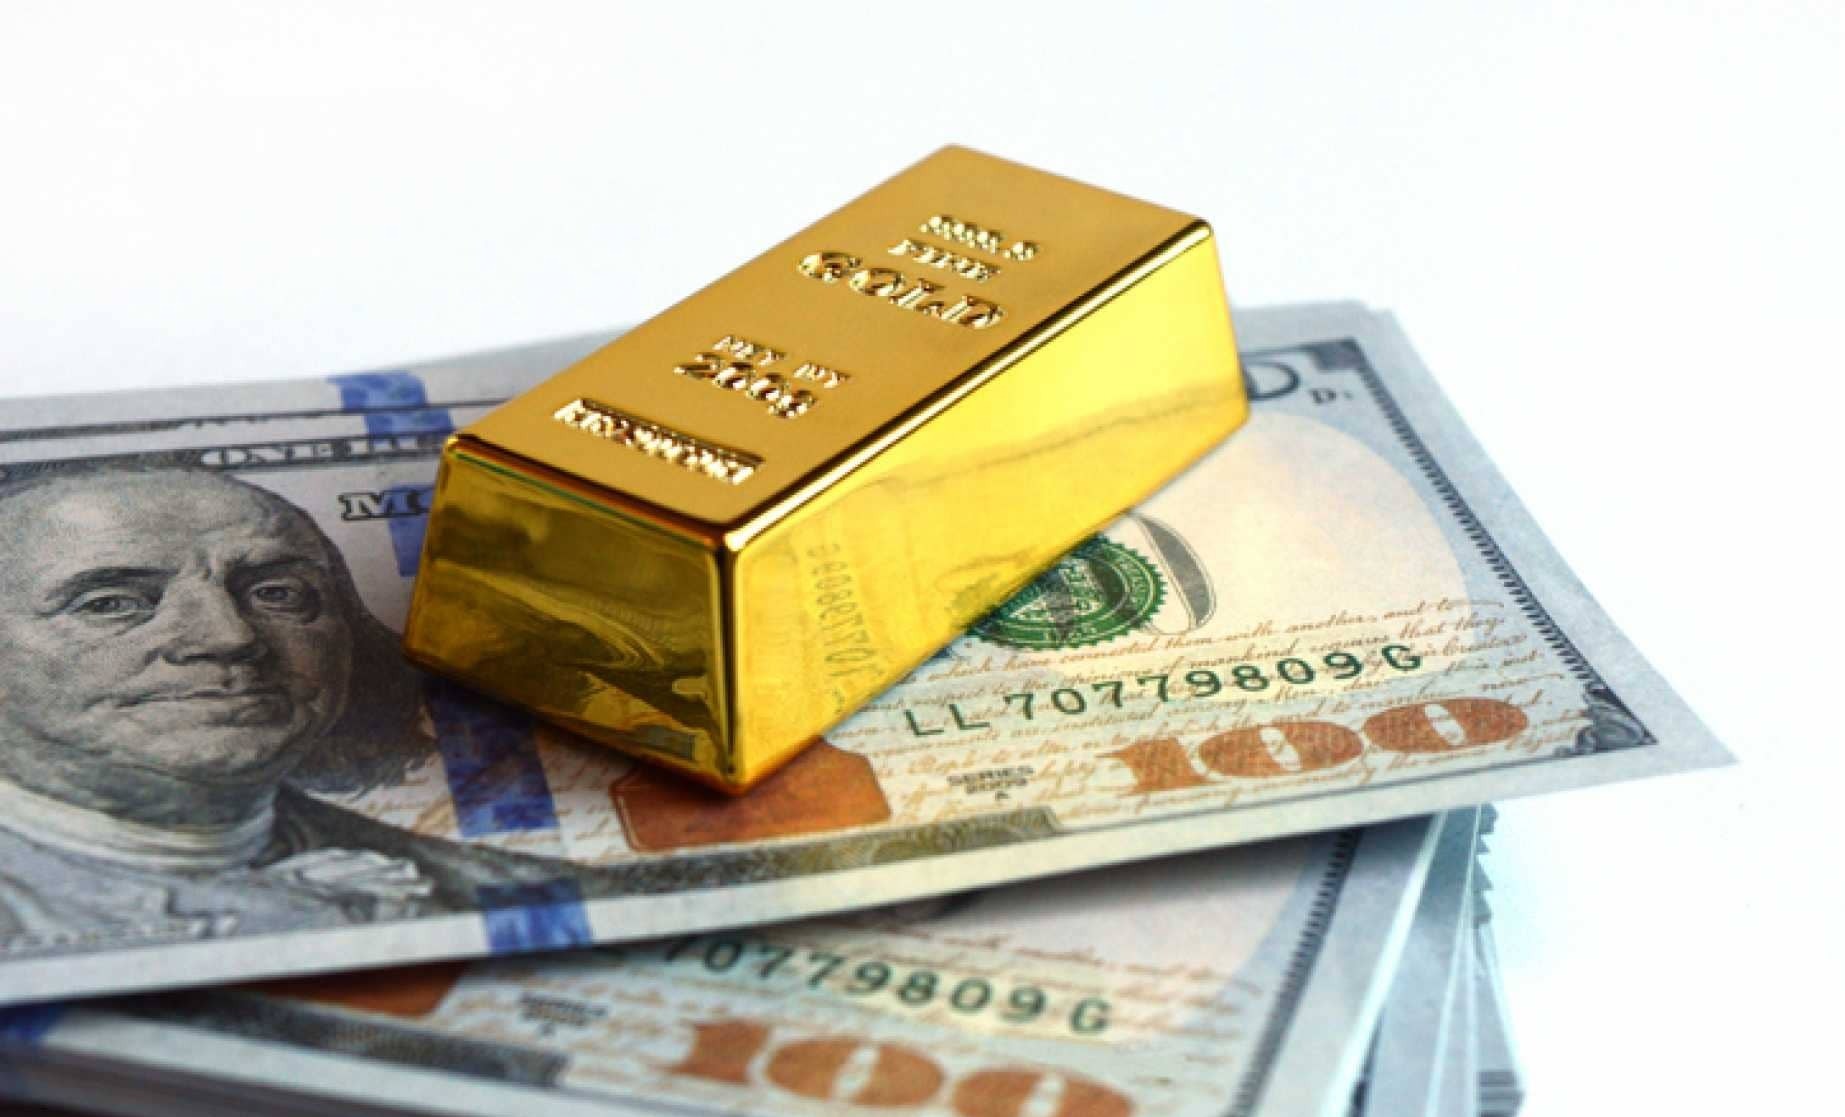  قیمت سکه ، قیمت طلا و قیمت دلار امروز شنبه 21 فروردین 1400